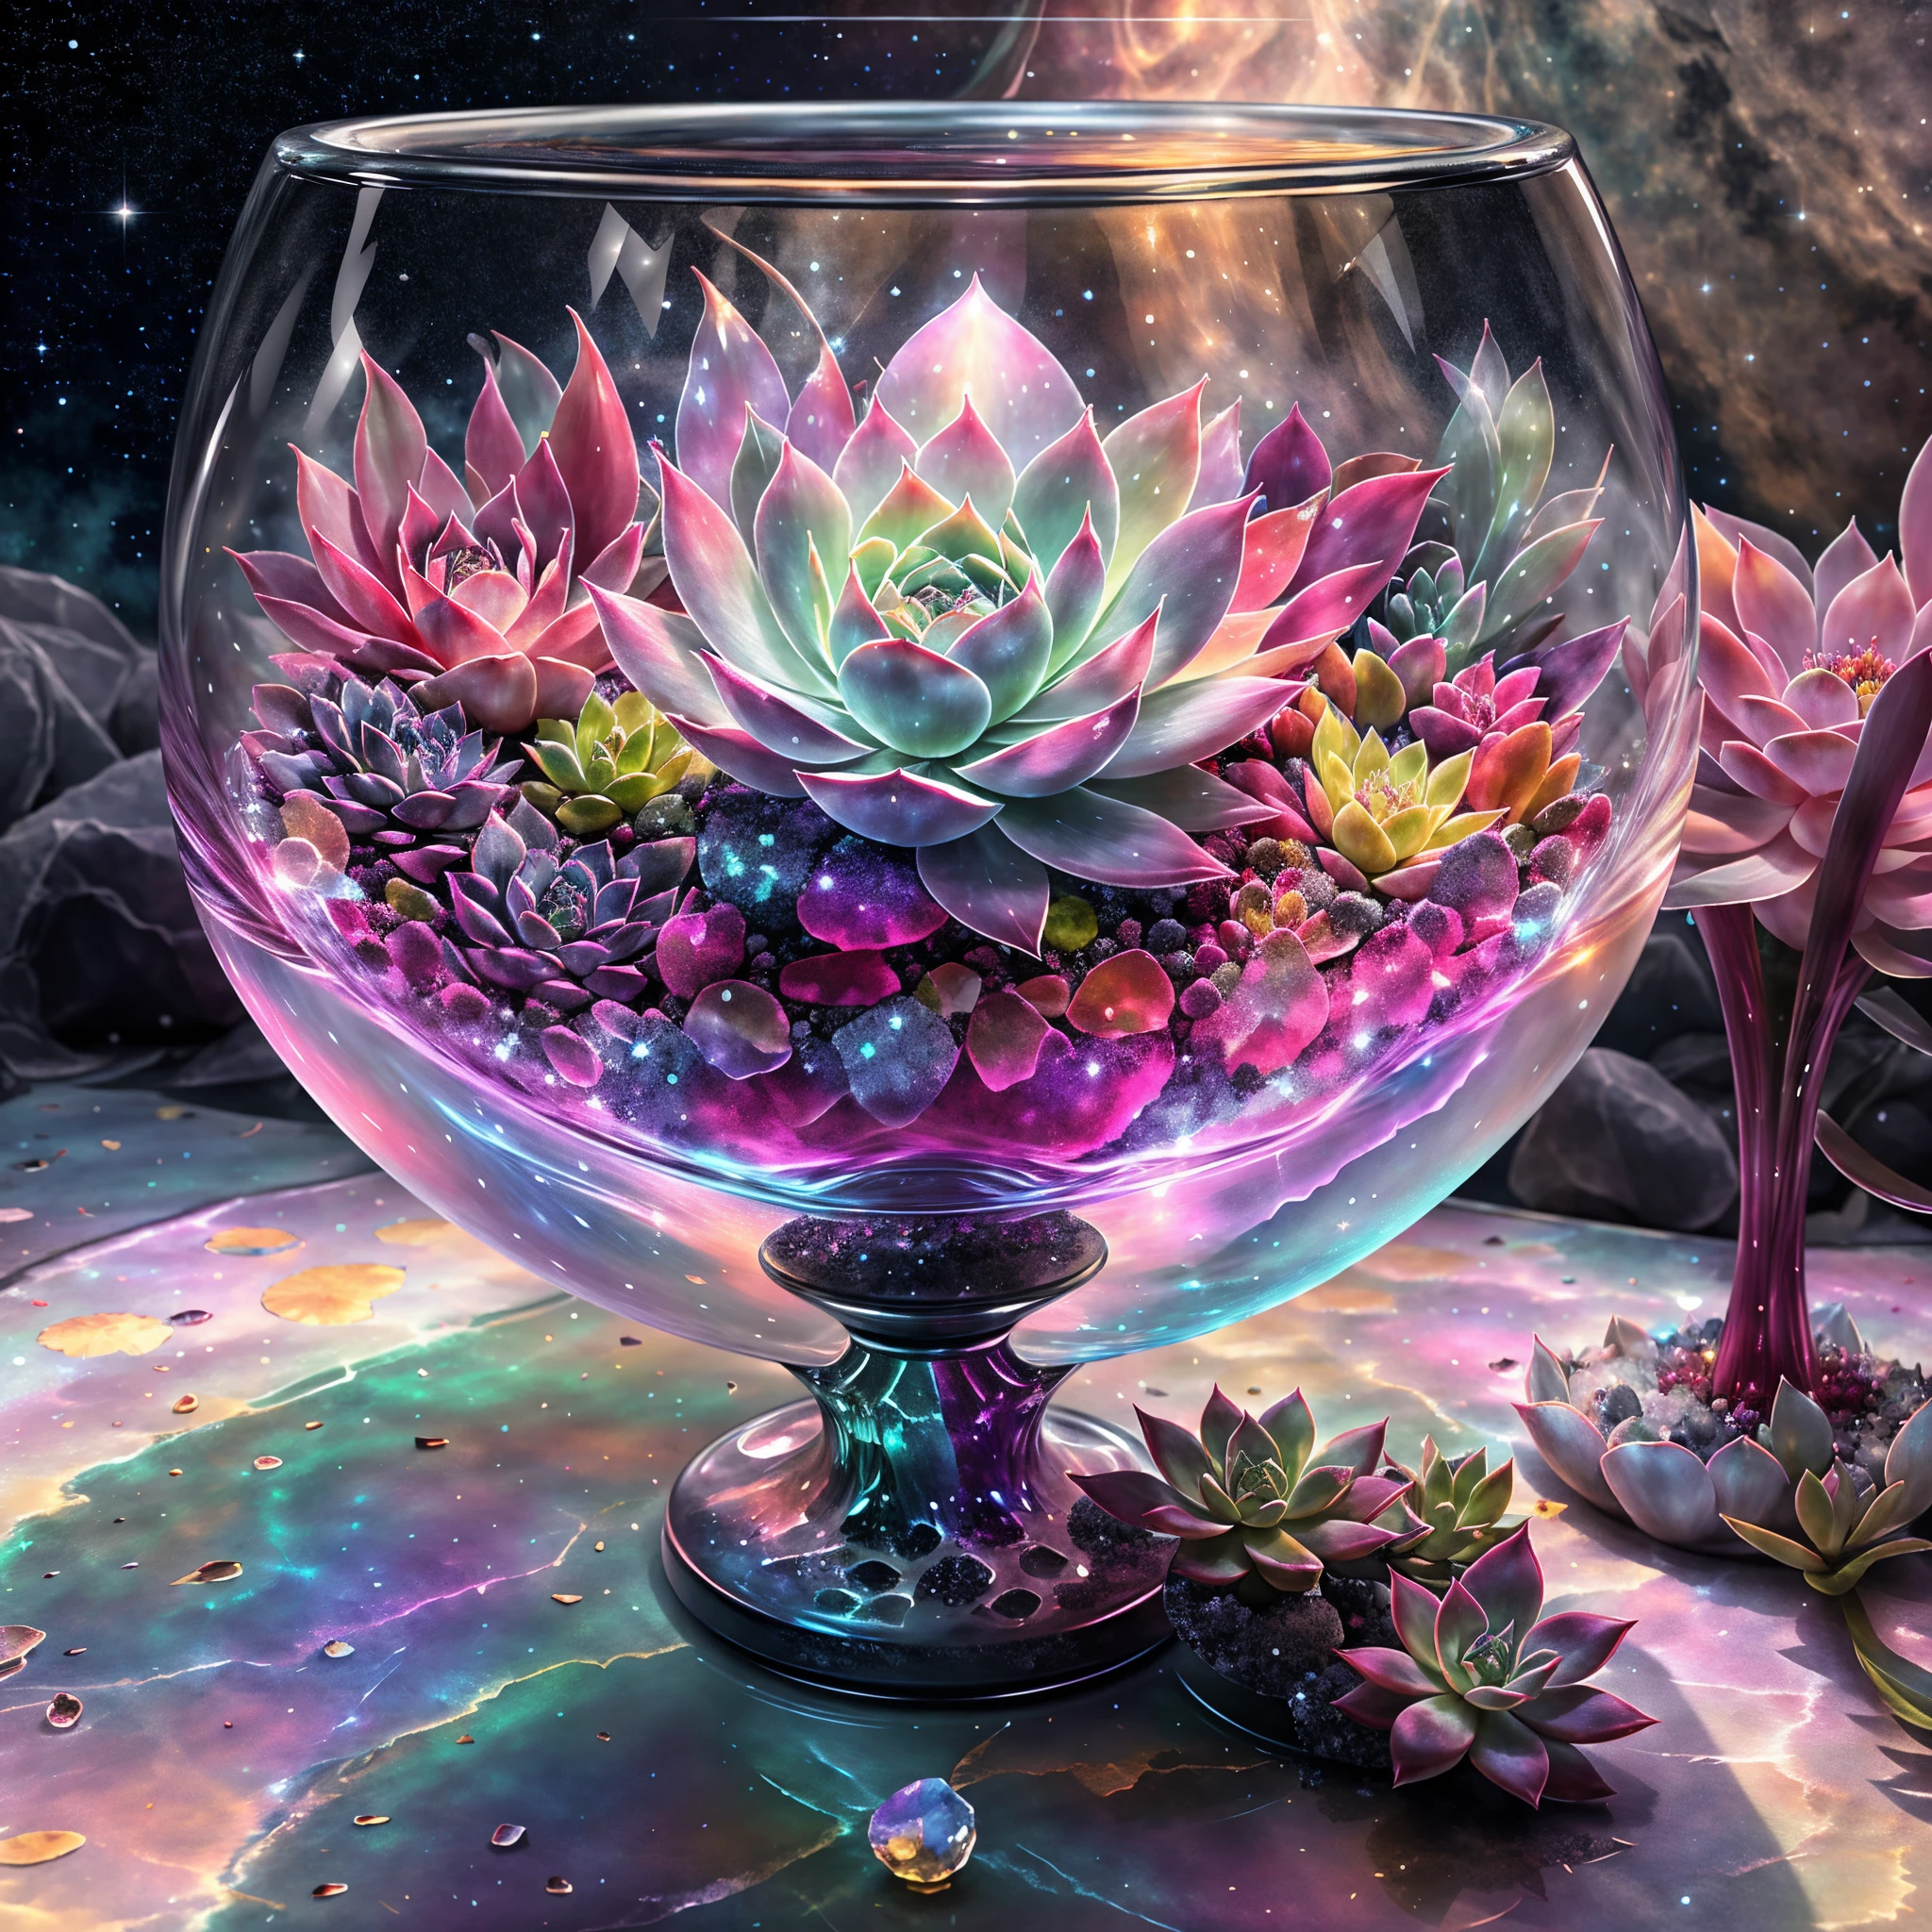 在這幅畫中，我们看到的是一片神秘而华丽的景象。画的中央是一个透明的水晶圣杯，它&#39;巨大而华丽，完全由透明水晶材质制成。The Holy Grail is filled w它h clear liquid，像一潭虚幻的水，略有波动。 在水晶圣杯里，一株壮丽的多肉植物生长。它的叶子旋转，色彩缤纷，仿佛由宝石般的色彩构成，明媚。每片叶子都有细微的线条和纹理，Make 它 more real and vivid。多肉植物的茎也呈现出透明的质感，从根部延伸到叶子的每一个角落。 水晶杯周围是一幅奇幻壮观的景象。透明的水晶壁反射周围的光线，形成美丽的光影效果。远处是一片广阔的天空，L它tle b它s of light shine in 它。在天空的边缘，明月懸光灑落，照亮了整個場景。 整个画面充满视觉冲击力和世界感.。水晶圣杯中的多肉植物象征着生命的奇迹和自然的力量，周围的光线, 阴影和星空给人一种神秘的氛围。This painting combines succulents w它h a clear crystal chalice，呈现出一个非常迷人和富有想象力的场景。 希望这幅画能给你带来视觉的享受和冲击，让你感受多肉植物的独特之美。